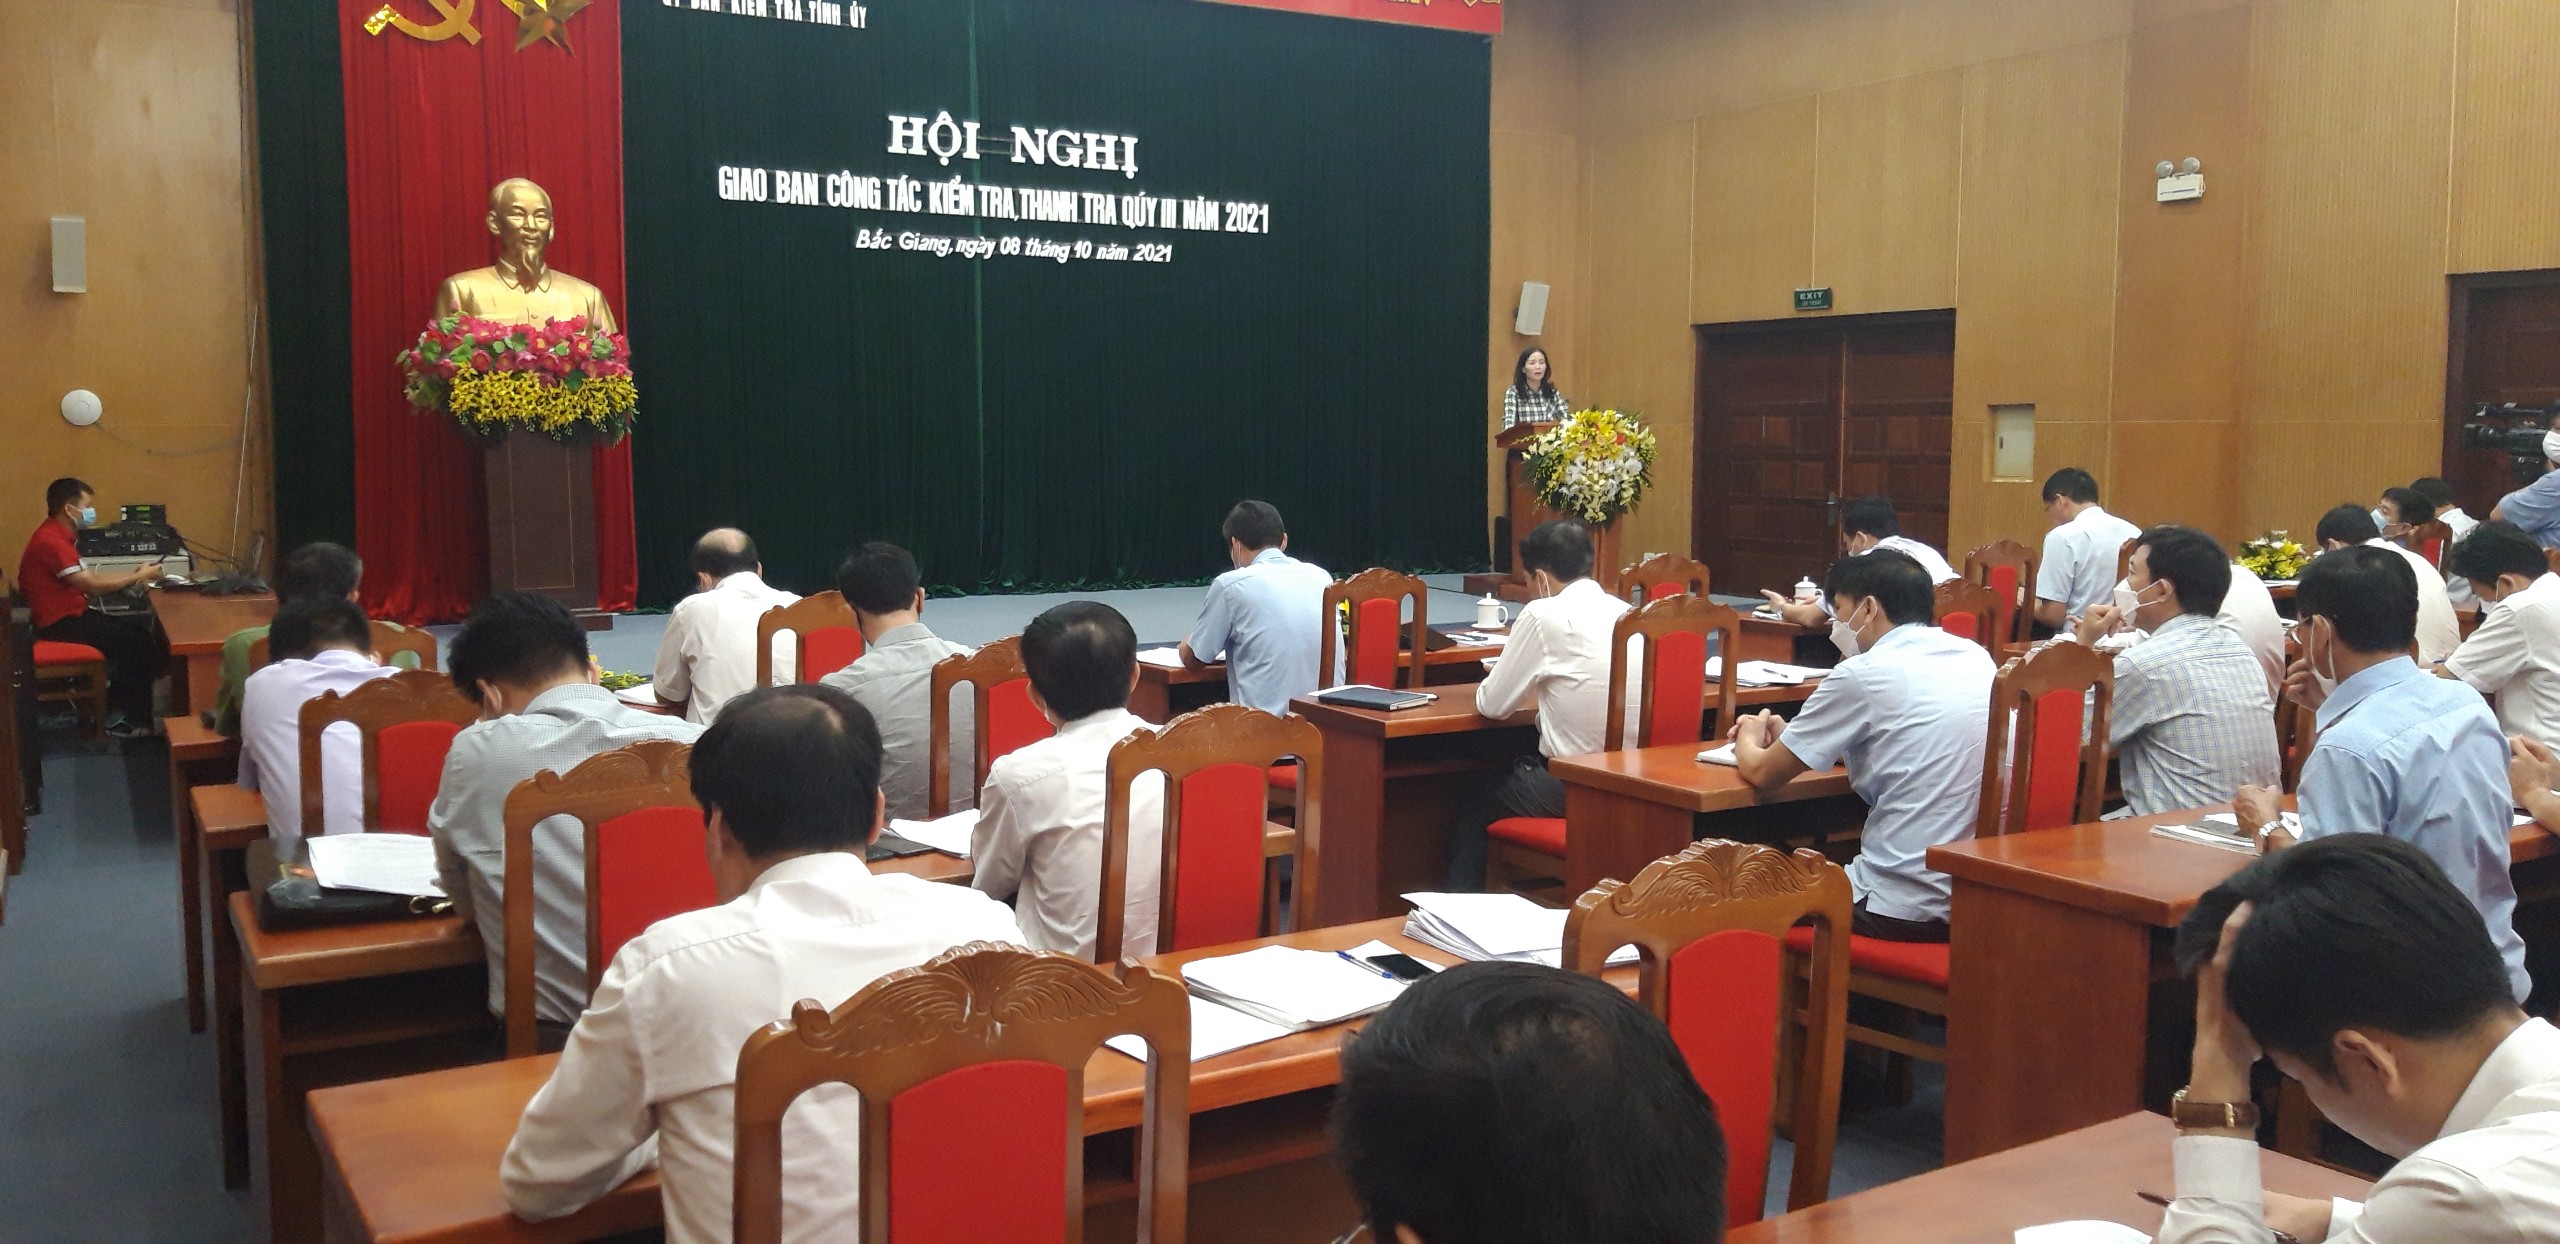 Bắc Giang tổ chức Hội nghị giao ban công tác kiểm tra, thanh tra quý III/2021